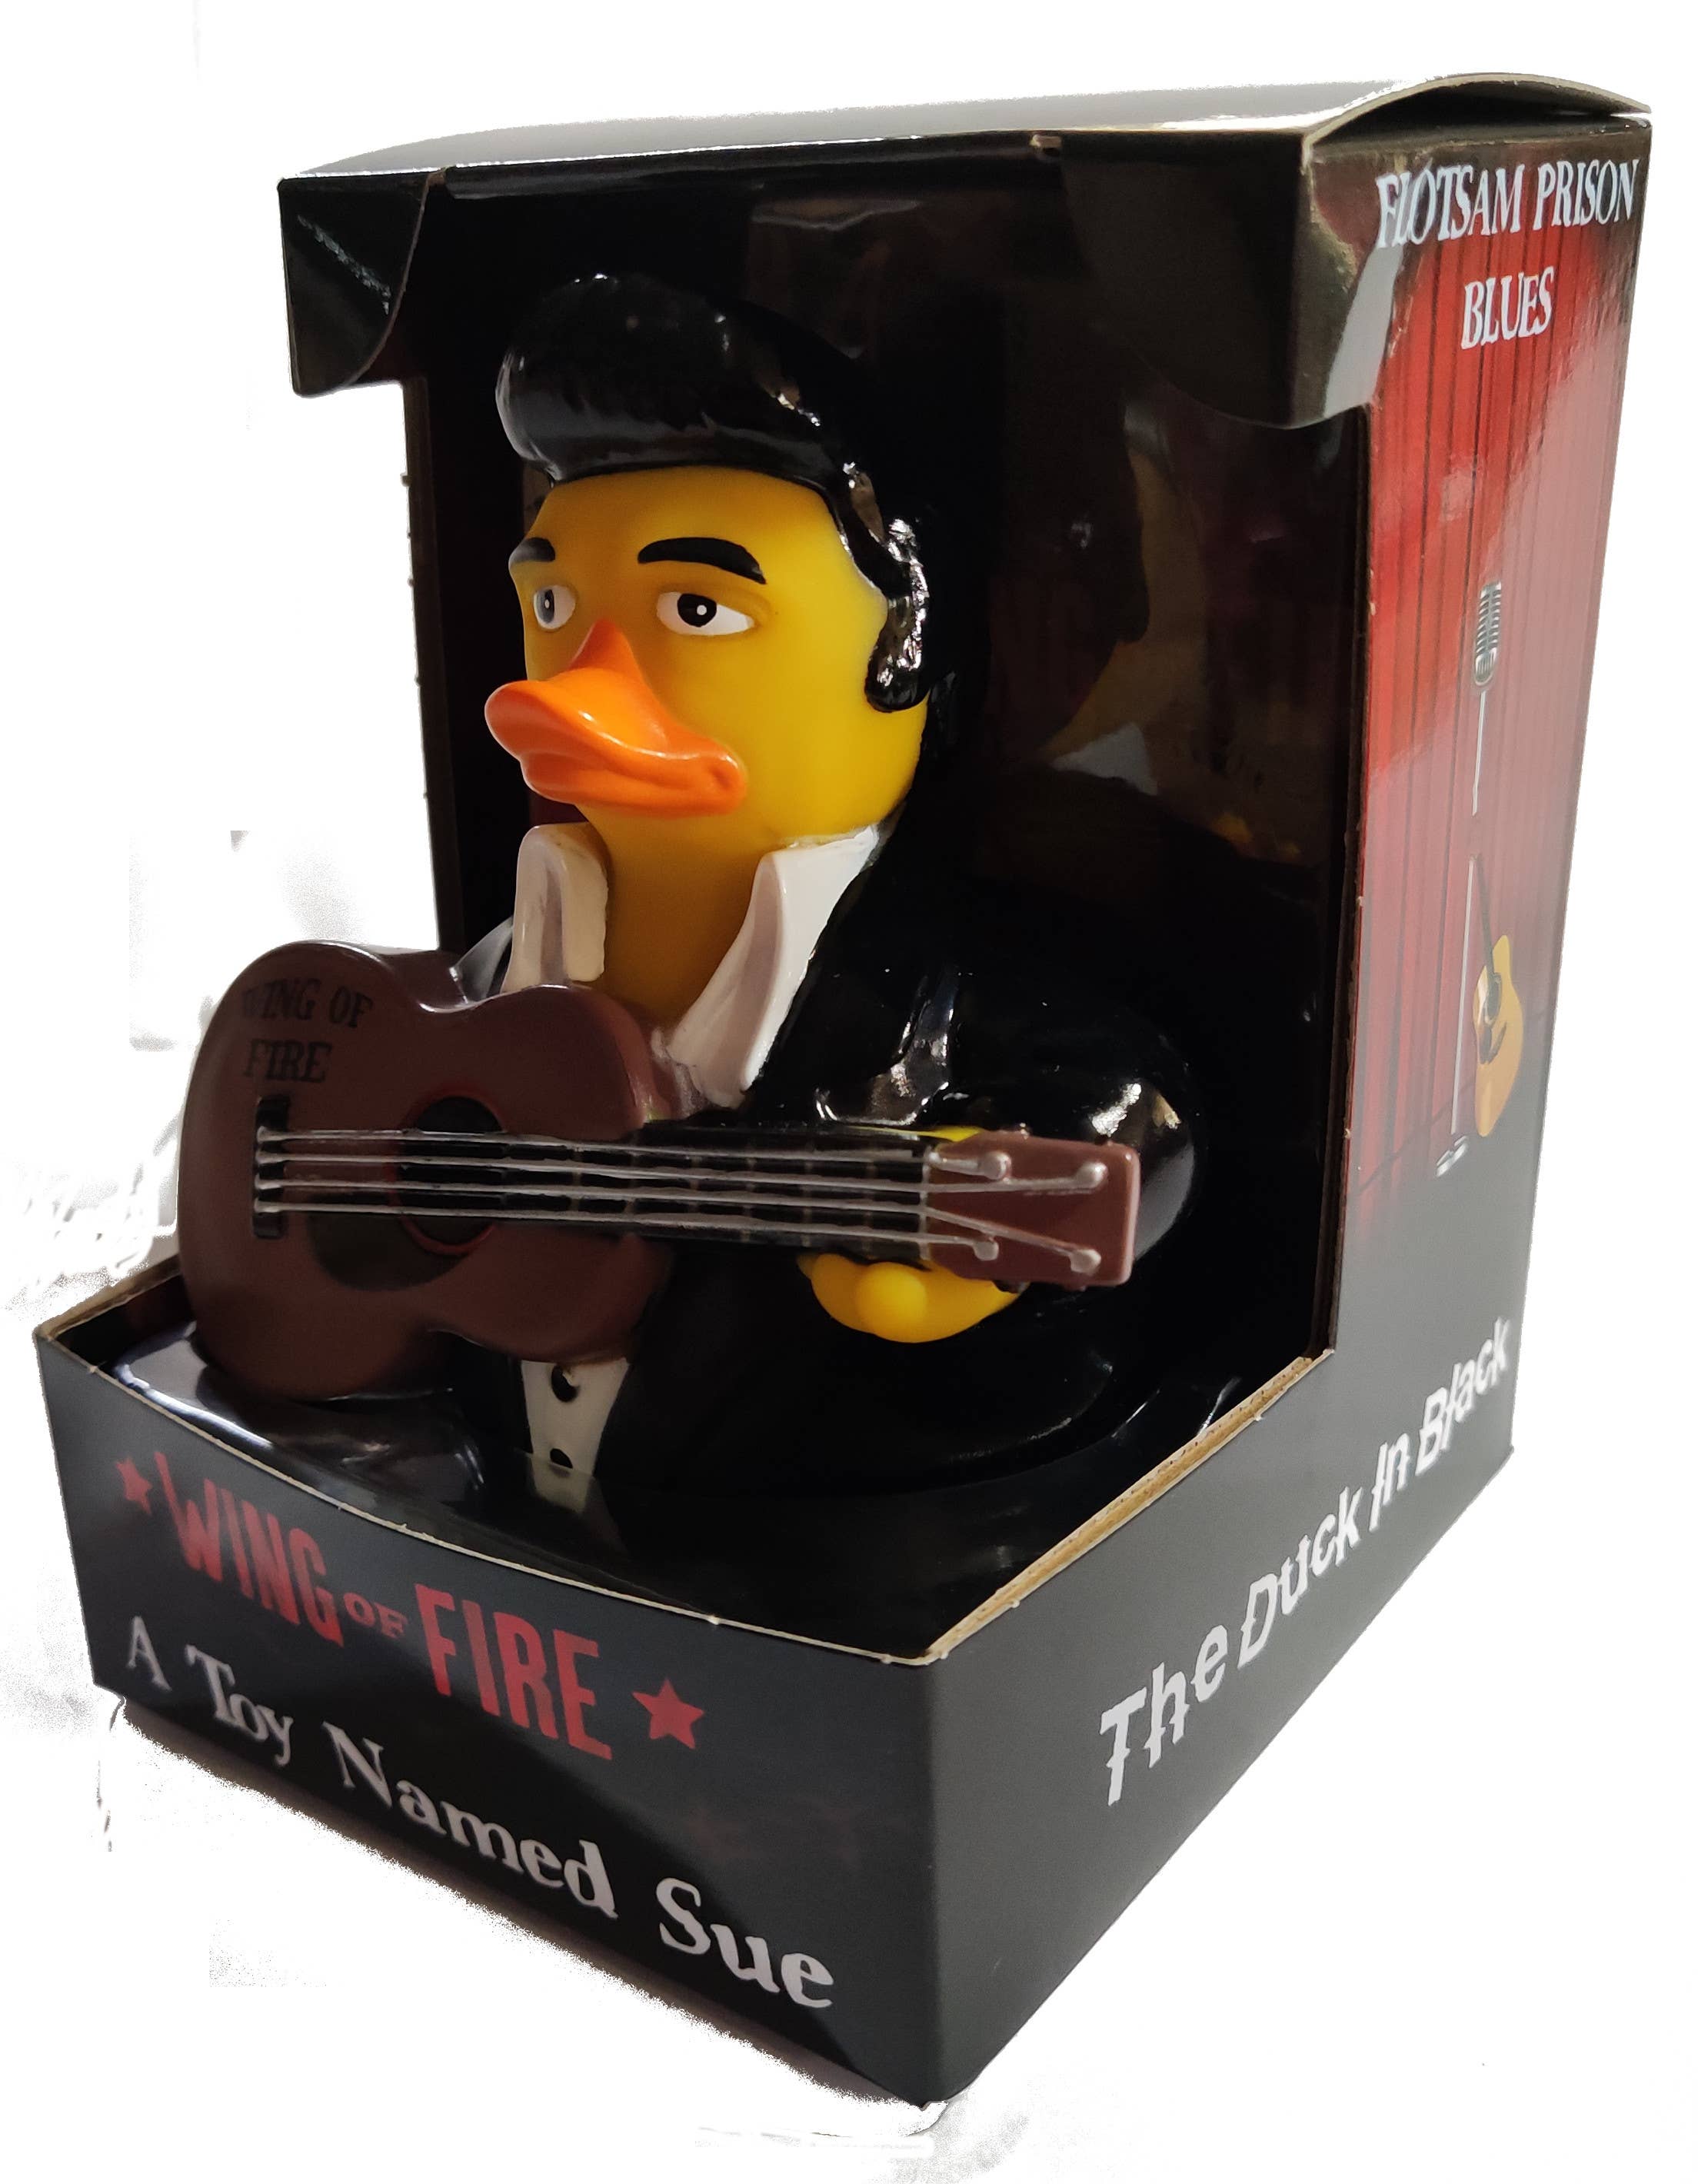 Duckin Rubber Duck by Celebriducks